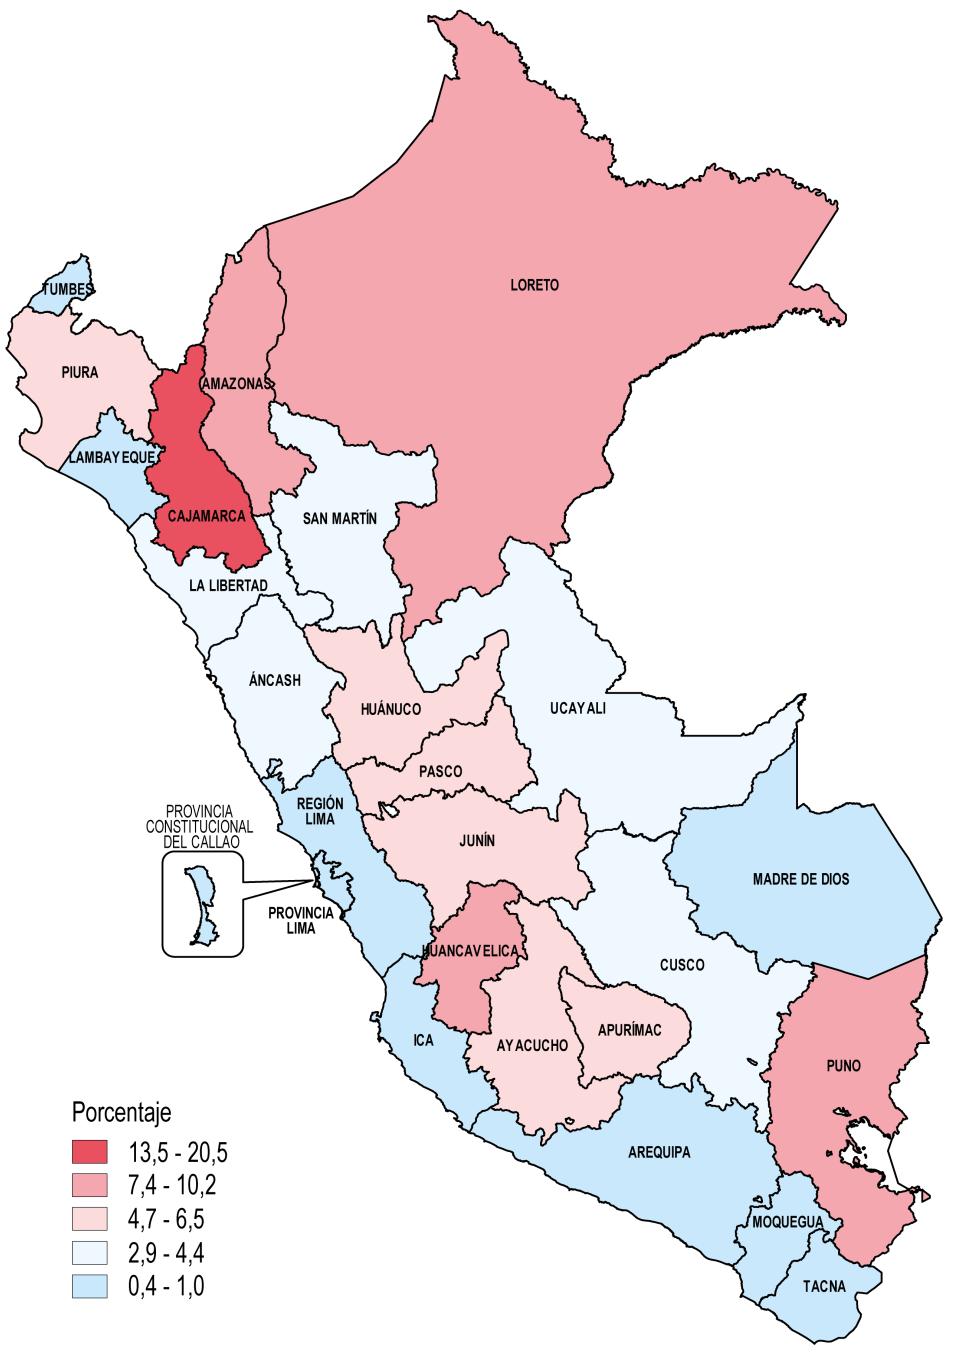 AÑO GRUPO DEPARTAMENTOS Inferior Superior 1 Cajamarca 16,6% 23,3% 2016 Perú: Incidencia de Pobreza Extrema por grupos de departamentos semejantes estadísticamente, 2016-2017 2 3 4 5 Amazonas,